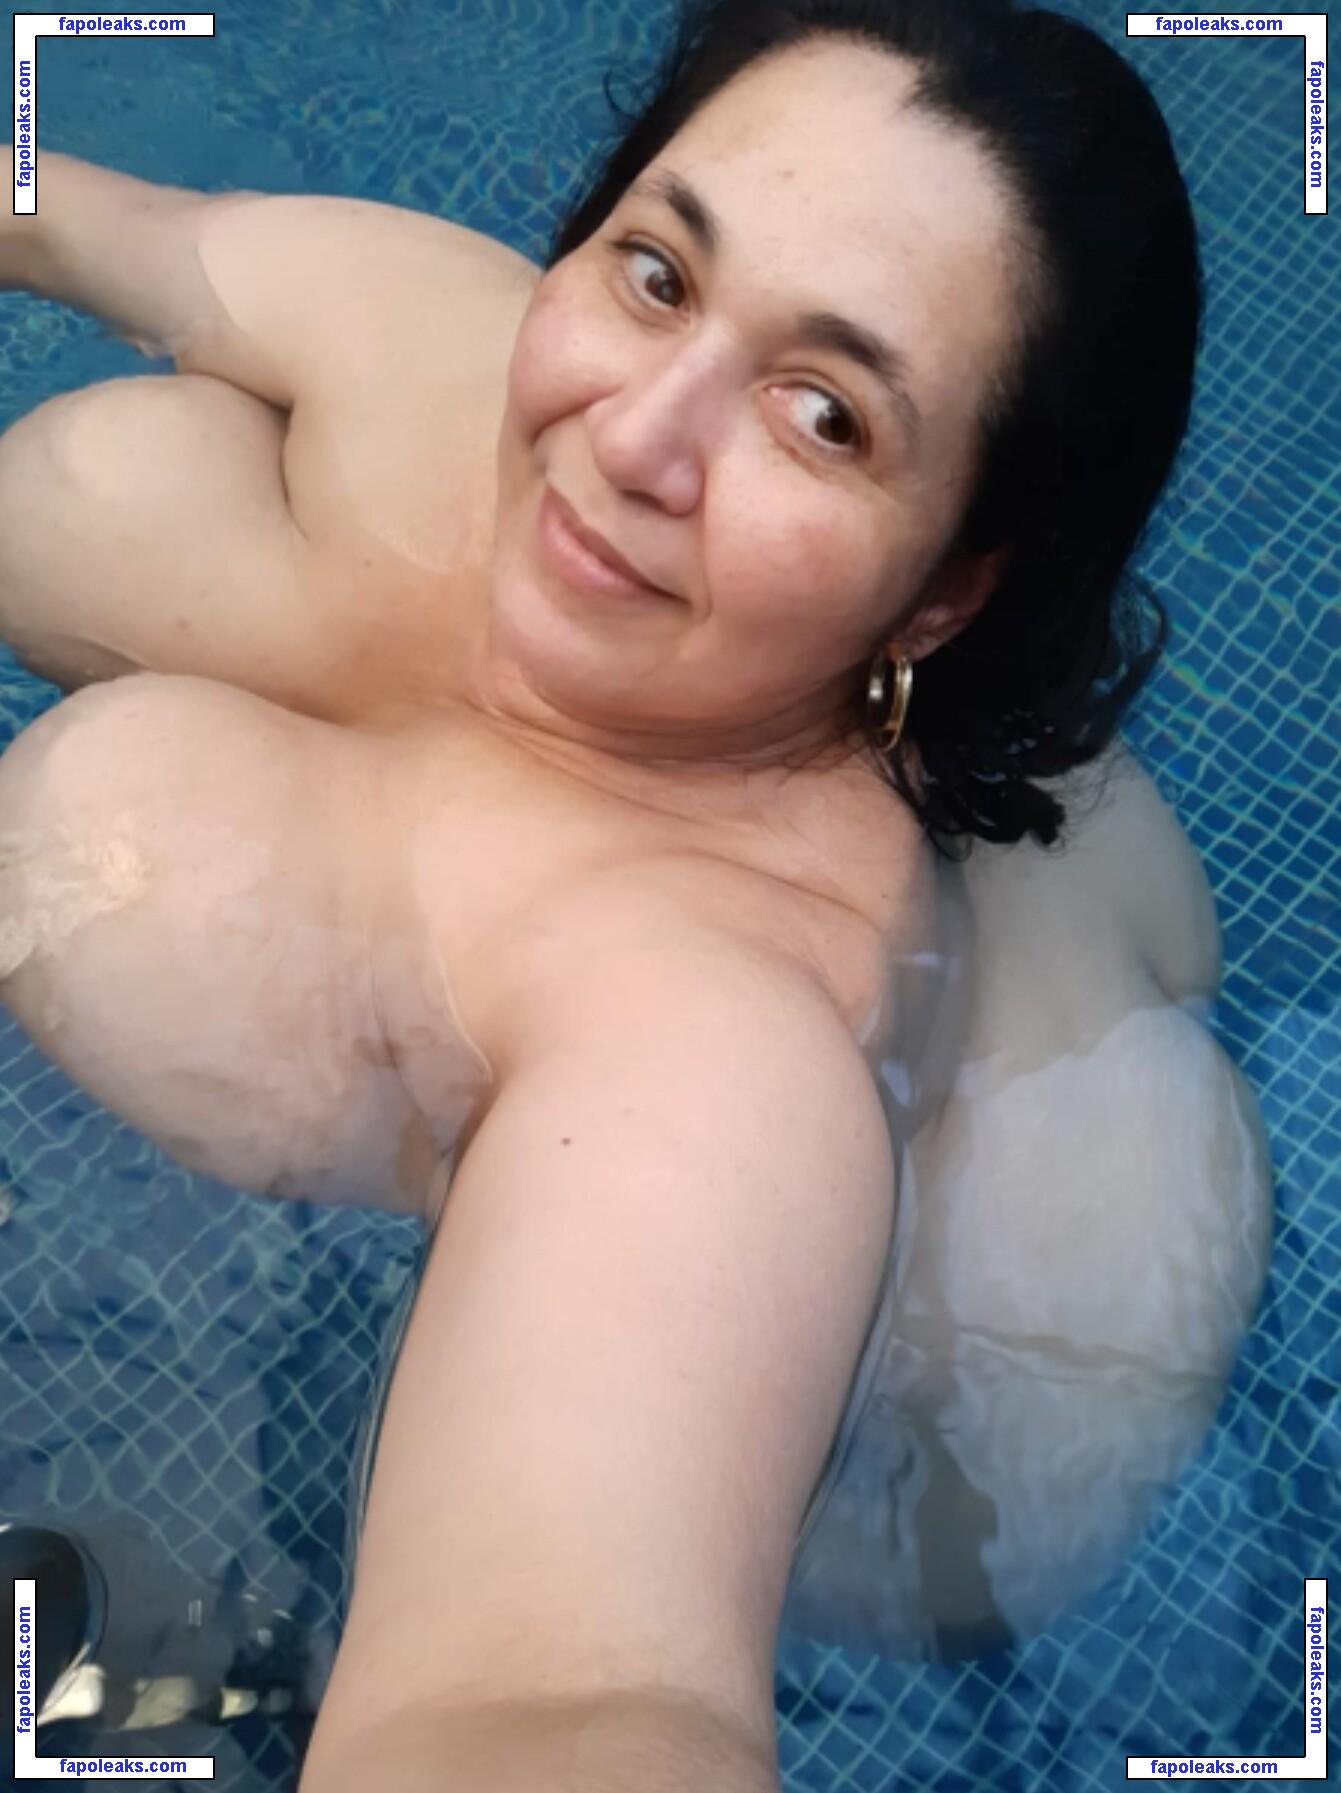 Paula Coelho / bbw_paula nude photo #0024 from OnlyFans